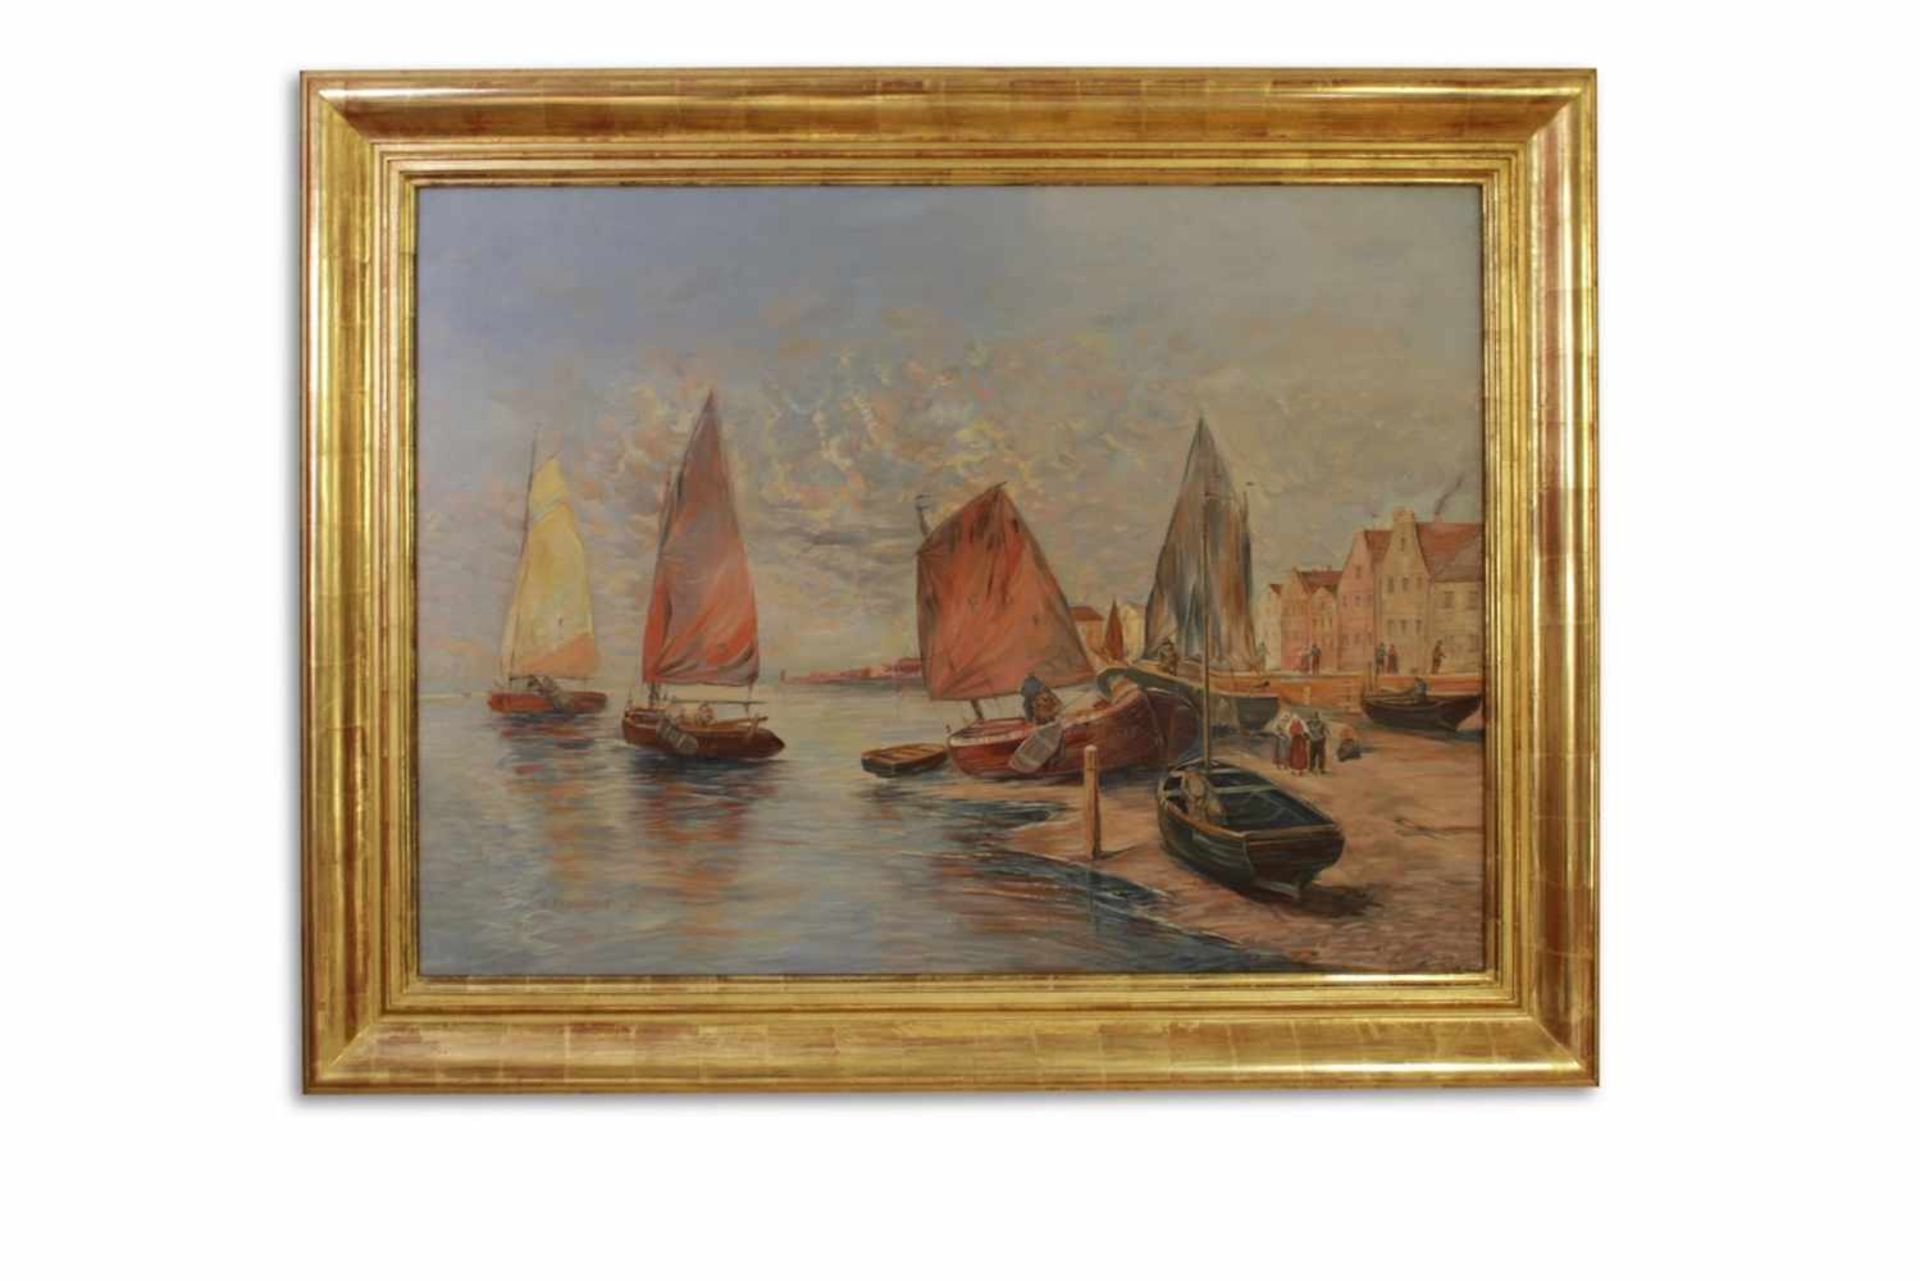 SEEBILD Seebild mit Fischerbooten und kleiner Hafenstadt, Georg Fischhoff (1859 - 1914), Öl auf